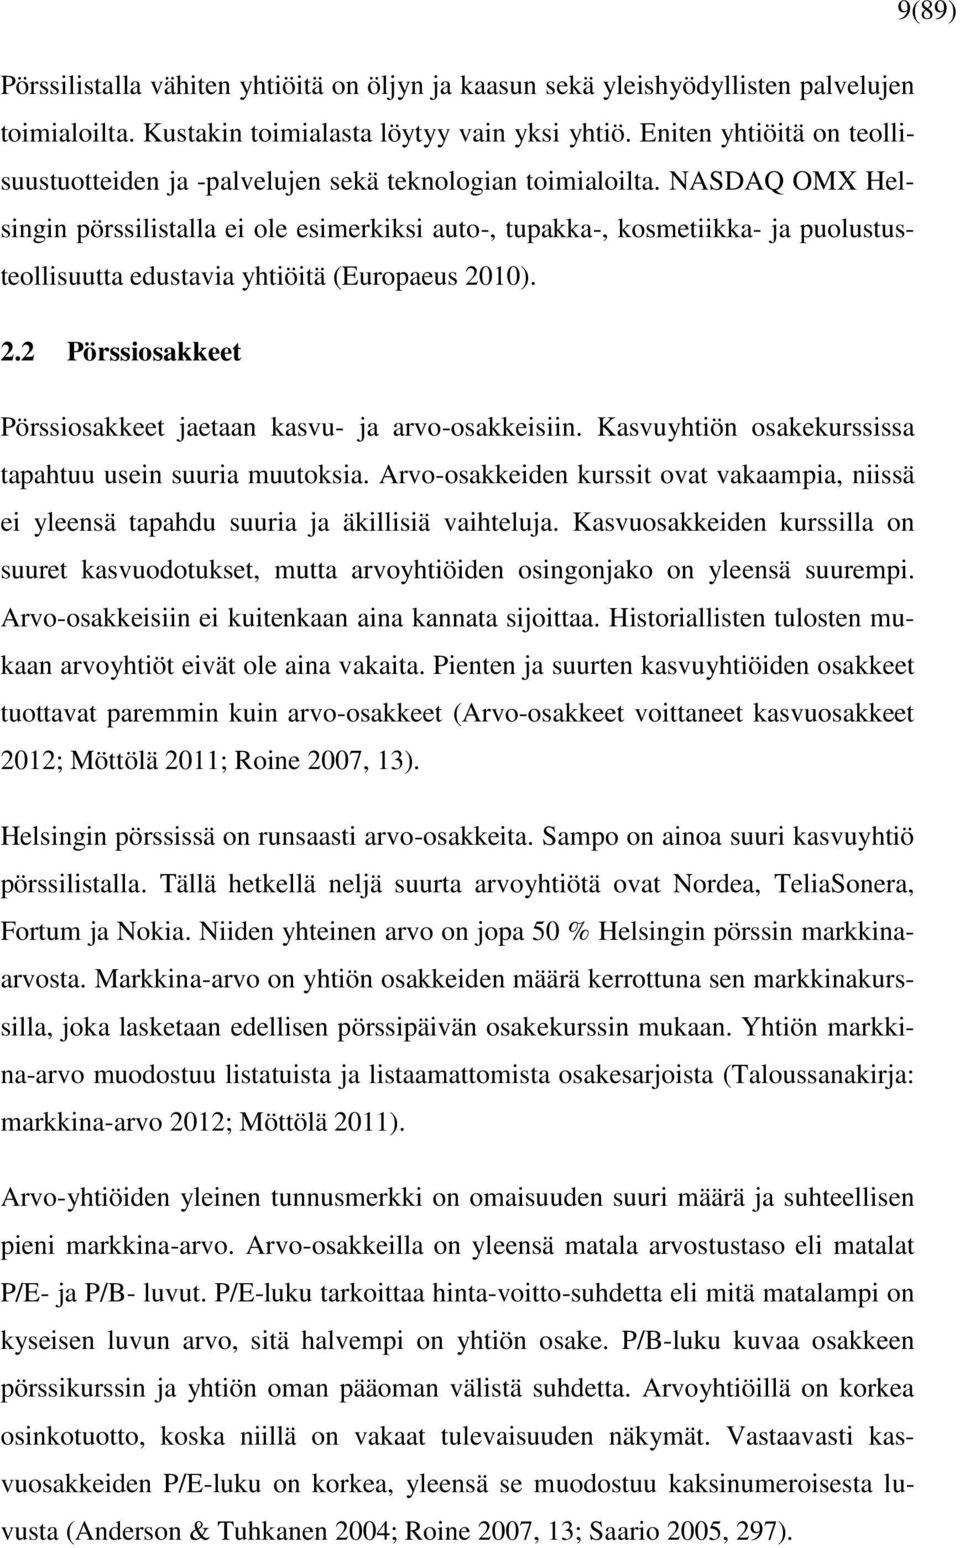 NASDAQ OMX Helsingin pörssilistalla ei ole esimerkiksi auto-, tupakka-, kosmetiikka- ja puolustusteollisuutta edustavia yhtiöitä (Europaeus 20